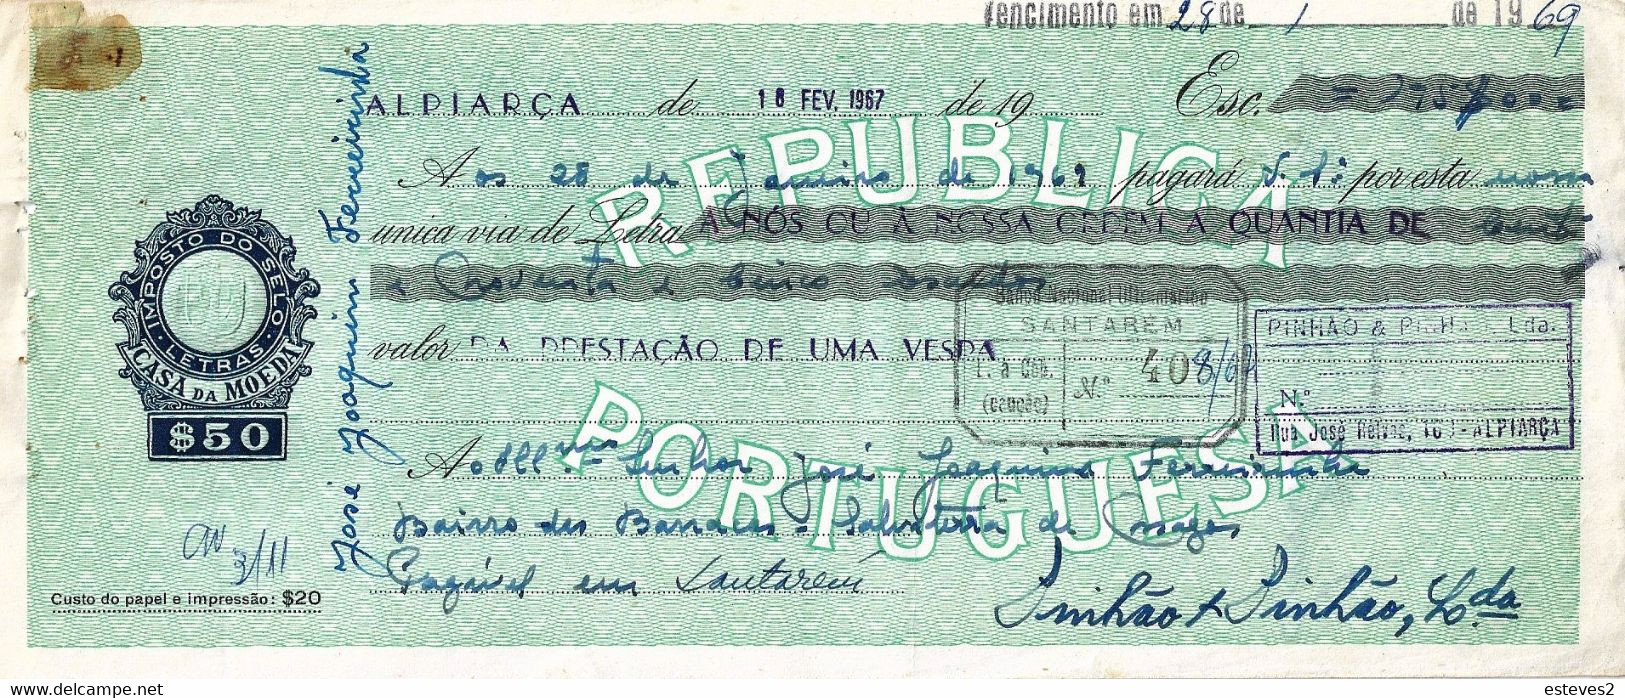 Portugal , 1967 , Letra , Bill Of Exchange , Used , Tax  $50 , Embossed Seal , Banco Nacional Ultramarino , Vespa Sale - Letras De Cambio